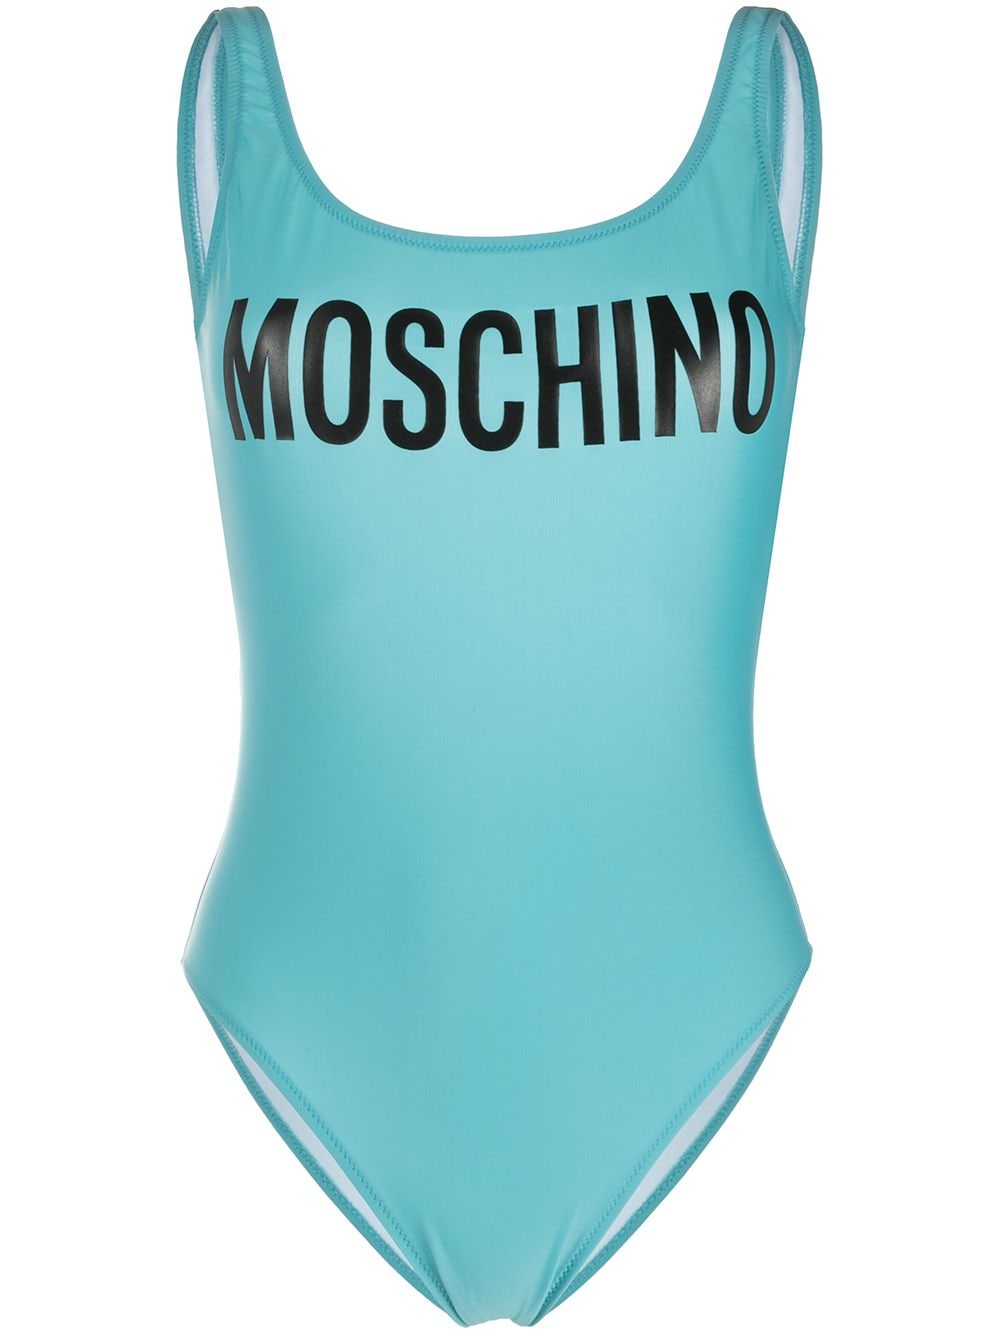 фото Moschino купальник с логотипом